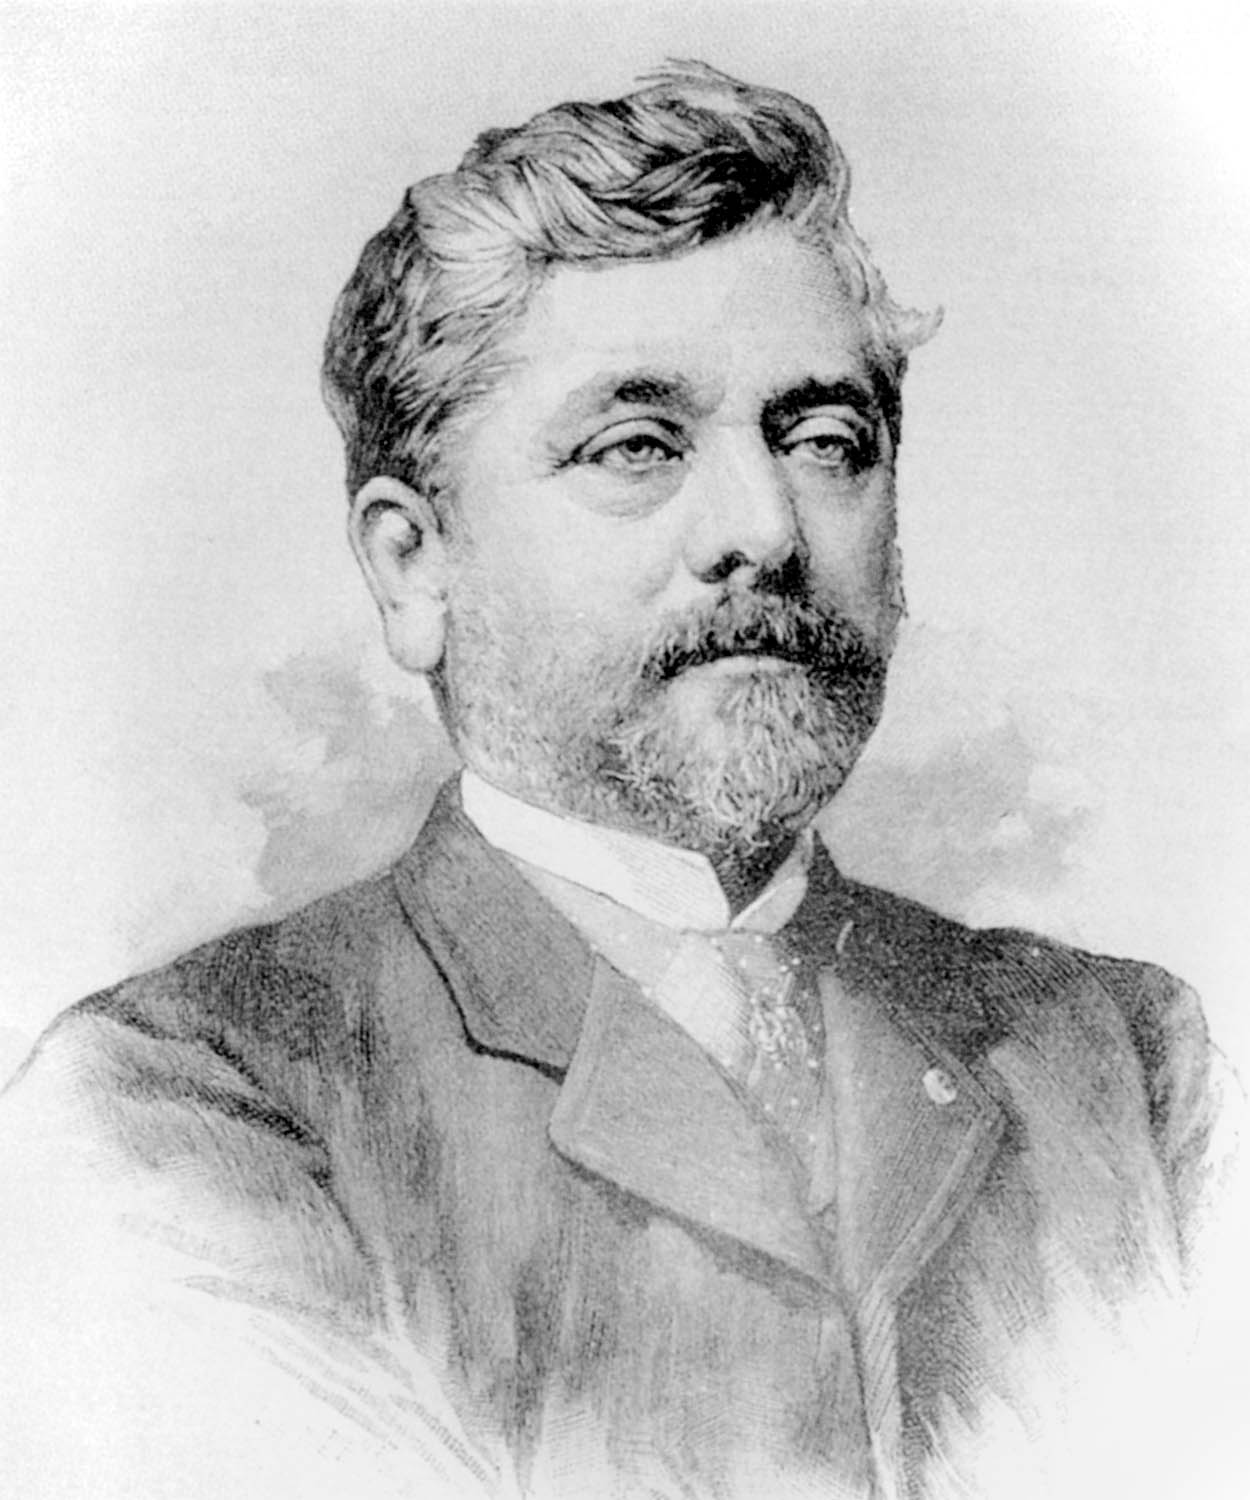  Biografi om Gustave Eiffel